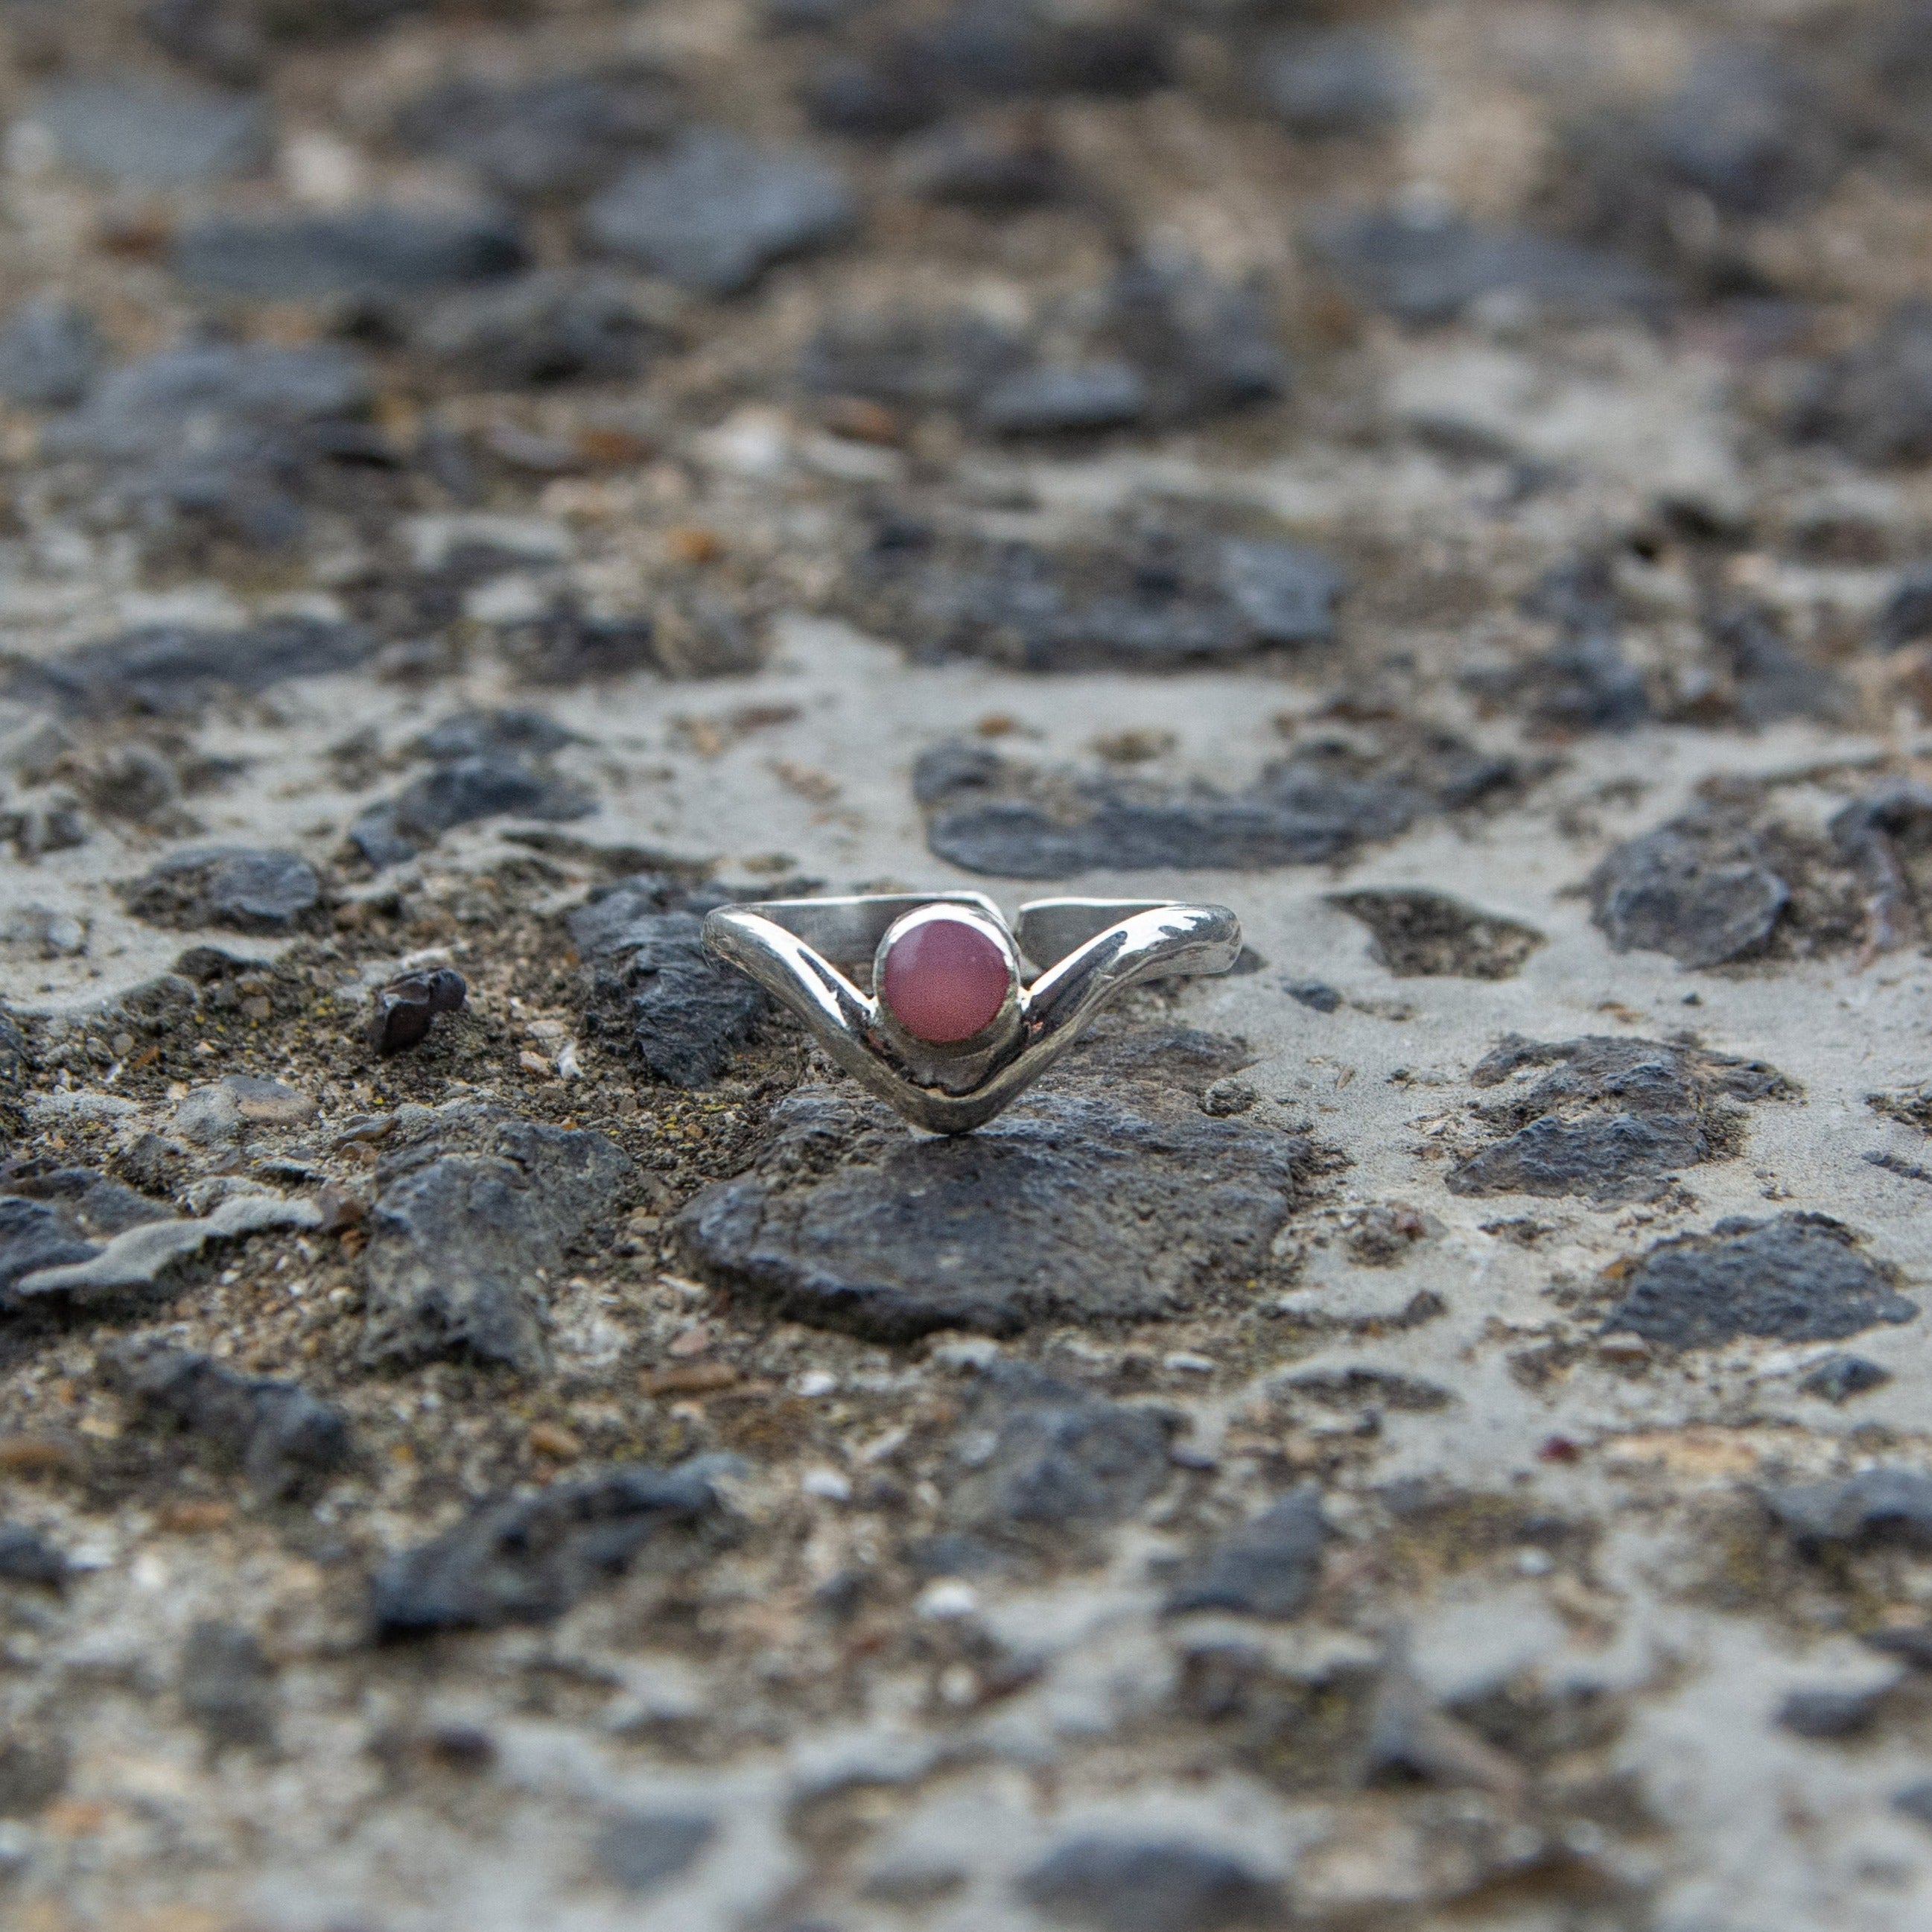 Peak Rose quartz and silver 950 adjustable ring